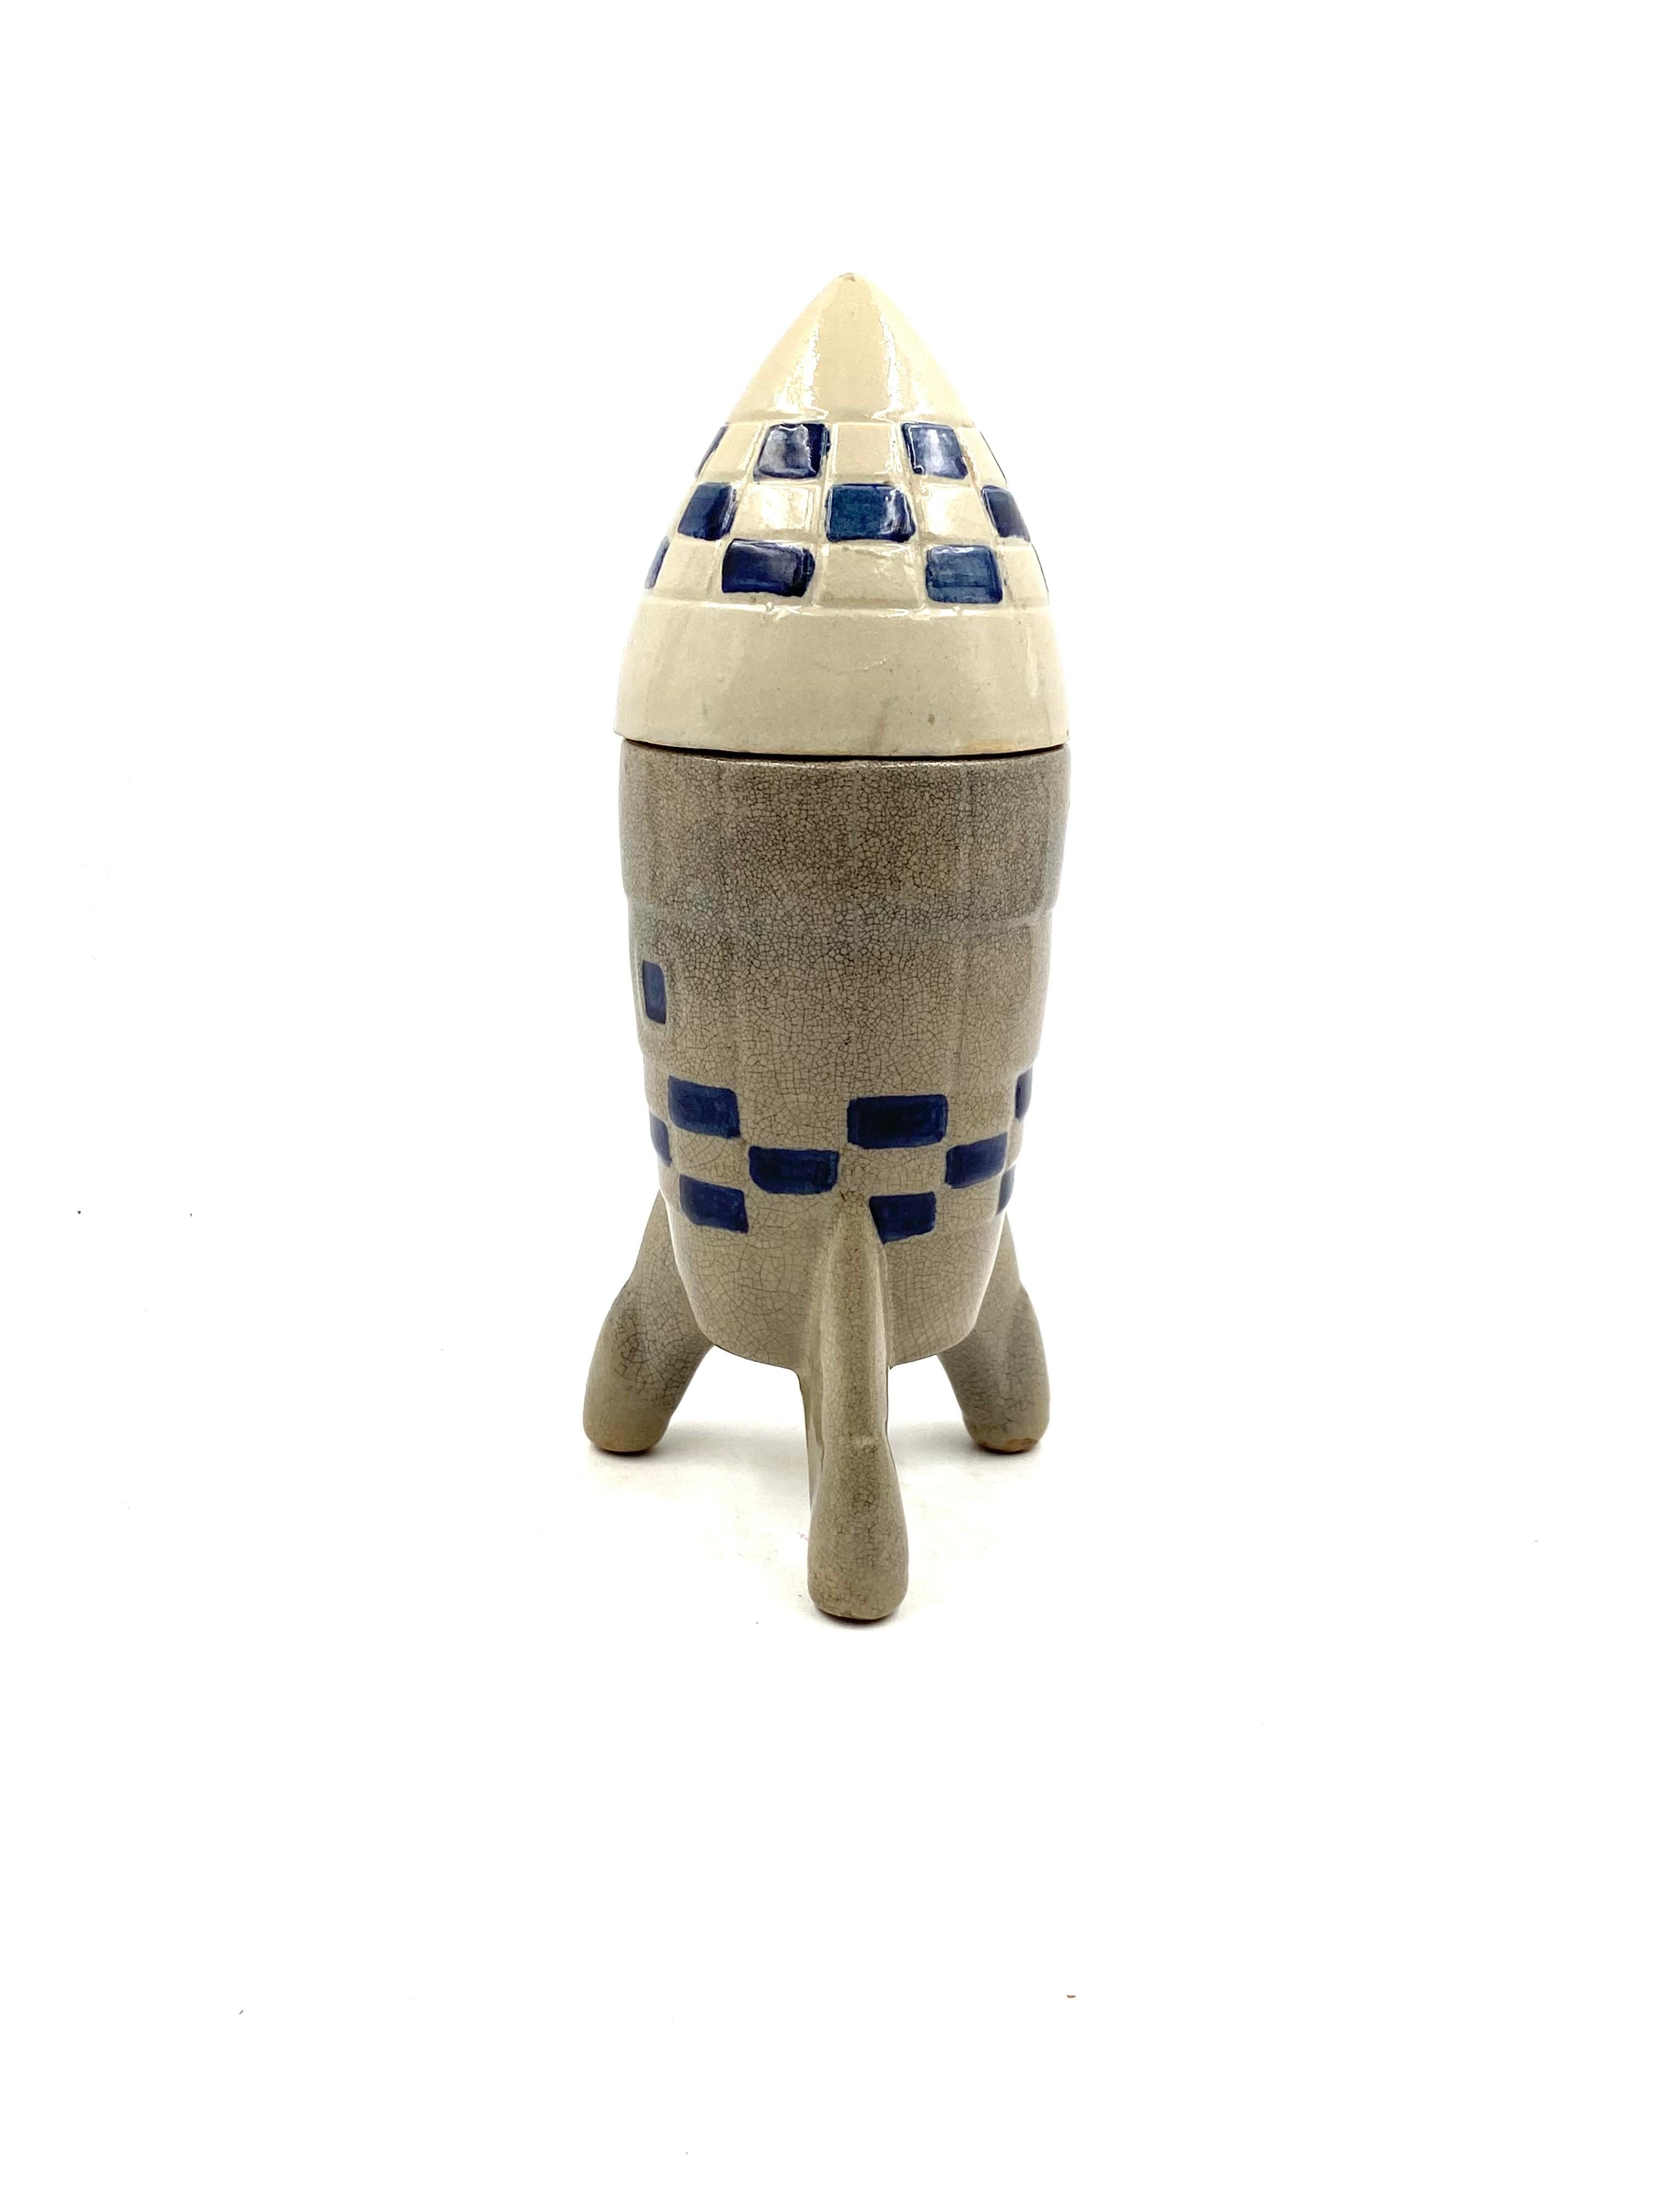 Ceramic Rocket / Spaceship Bottle / Decanter, France, 1940s-1950s For Sale 6